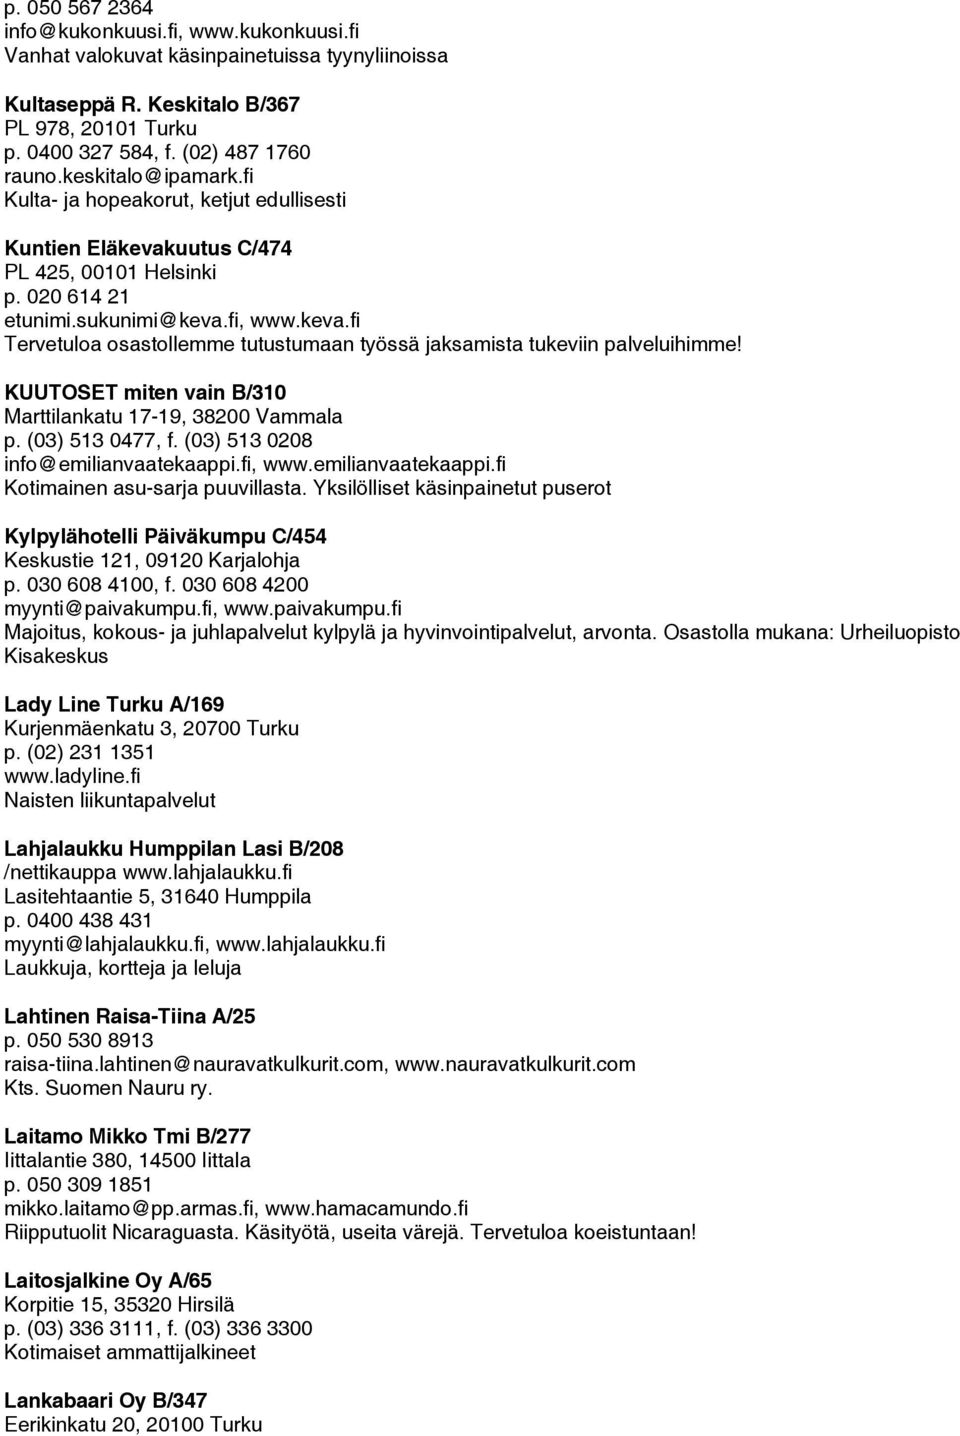 KUUTOSET miten vain B/310 Marttilankatu 17-19, 38200 Vammala p. (03) 513 0477, f. (03) 513 0208 info@emilianvaatekaappi.fi, www.emilianvaatekaappi.fi Kotimainen asu-sarja puuvillasta.